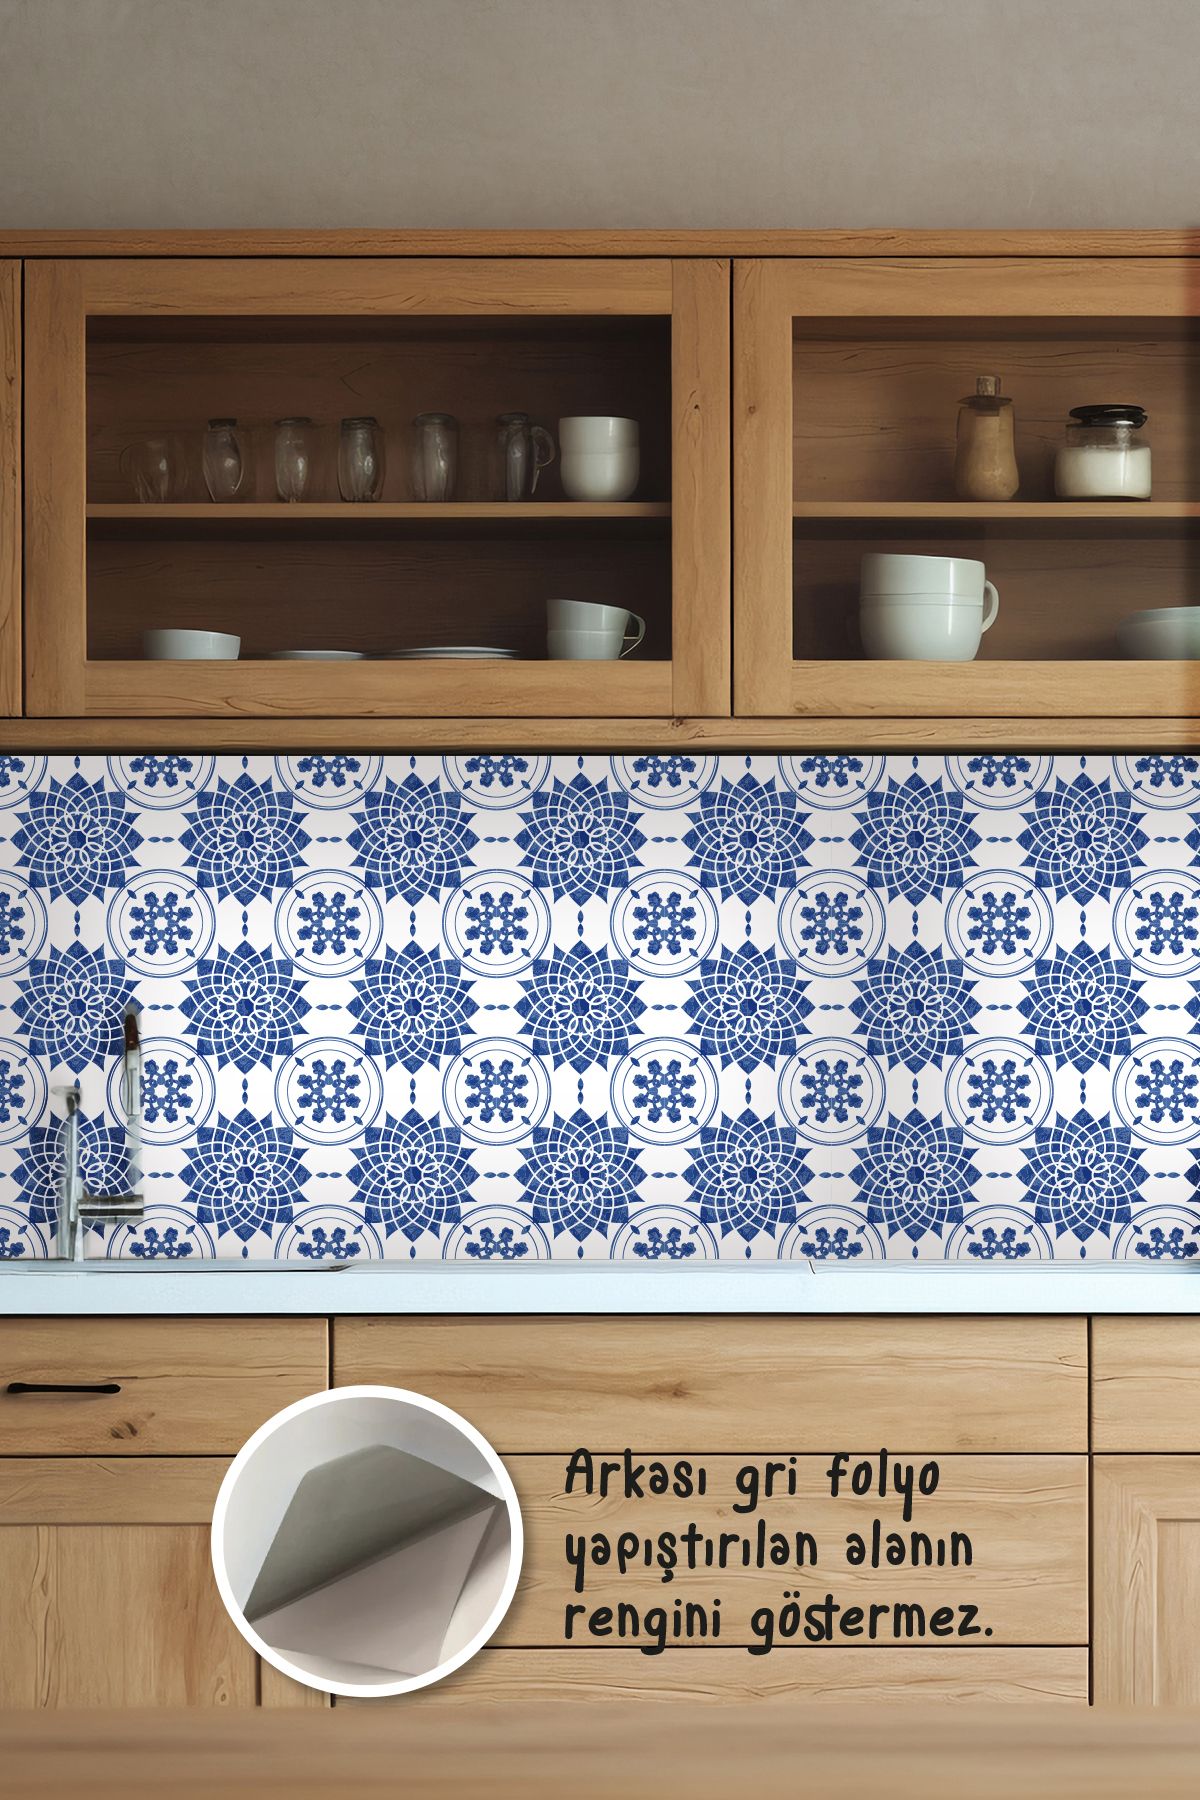 Tooall Mutfak Tezgah Arası Açık Mavi Desenli Folyo Kaplama Sticker, Uv Baskı, 100x50 cm